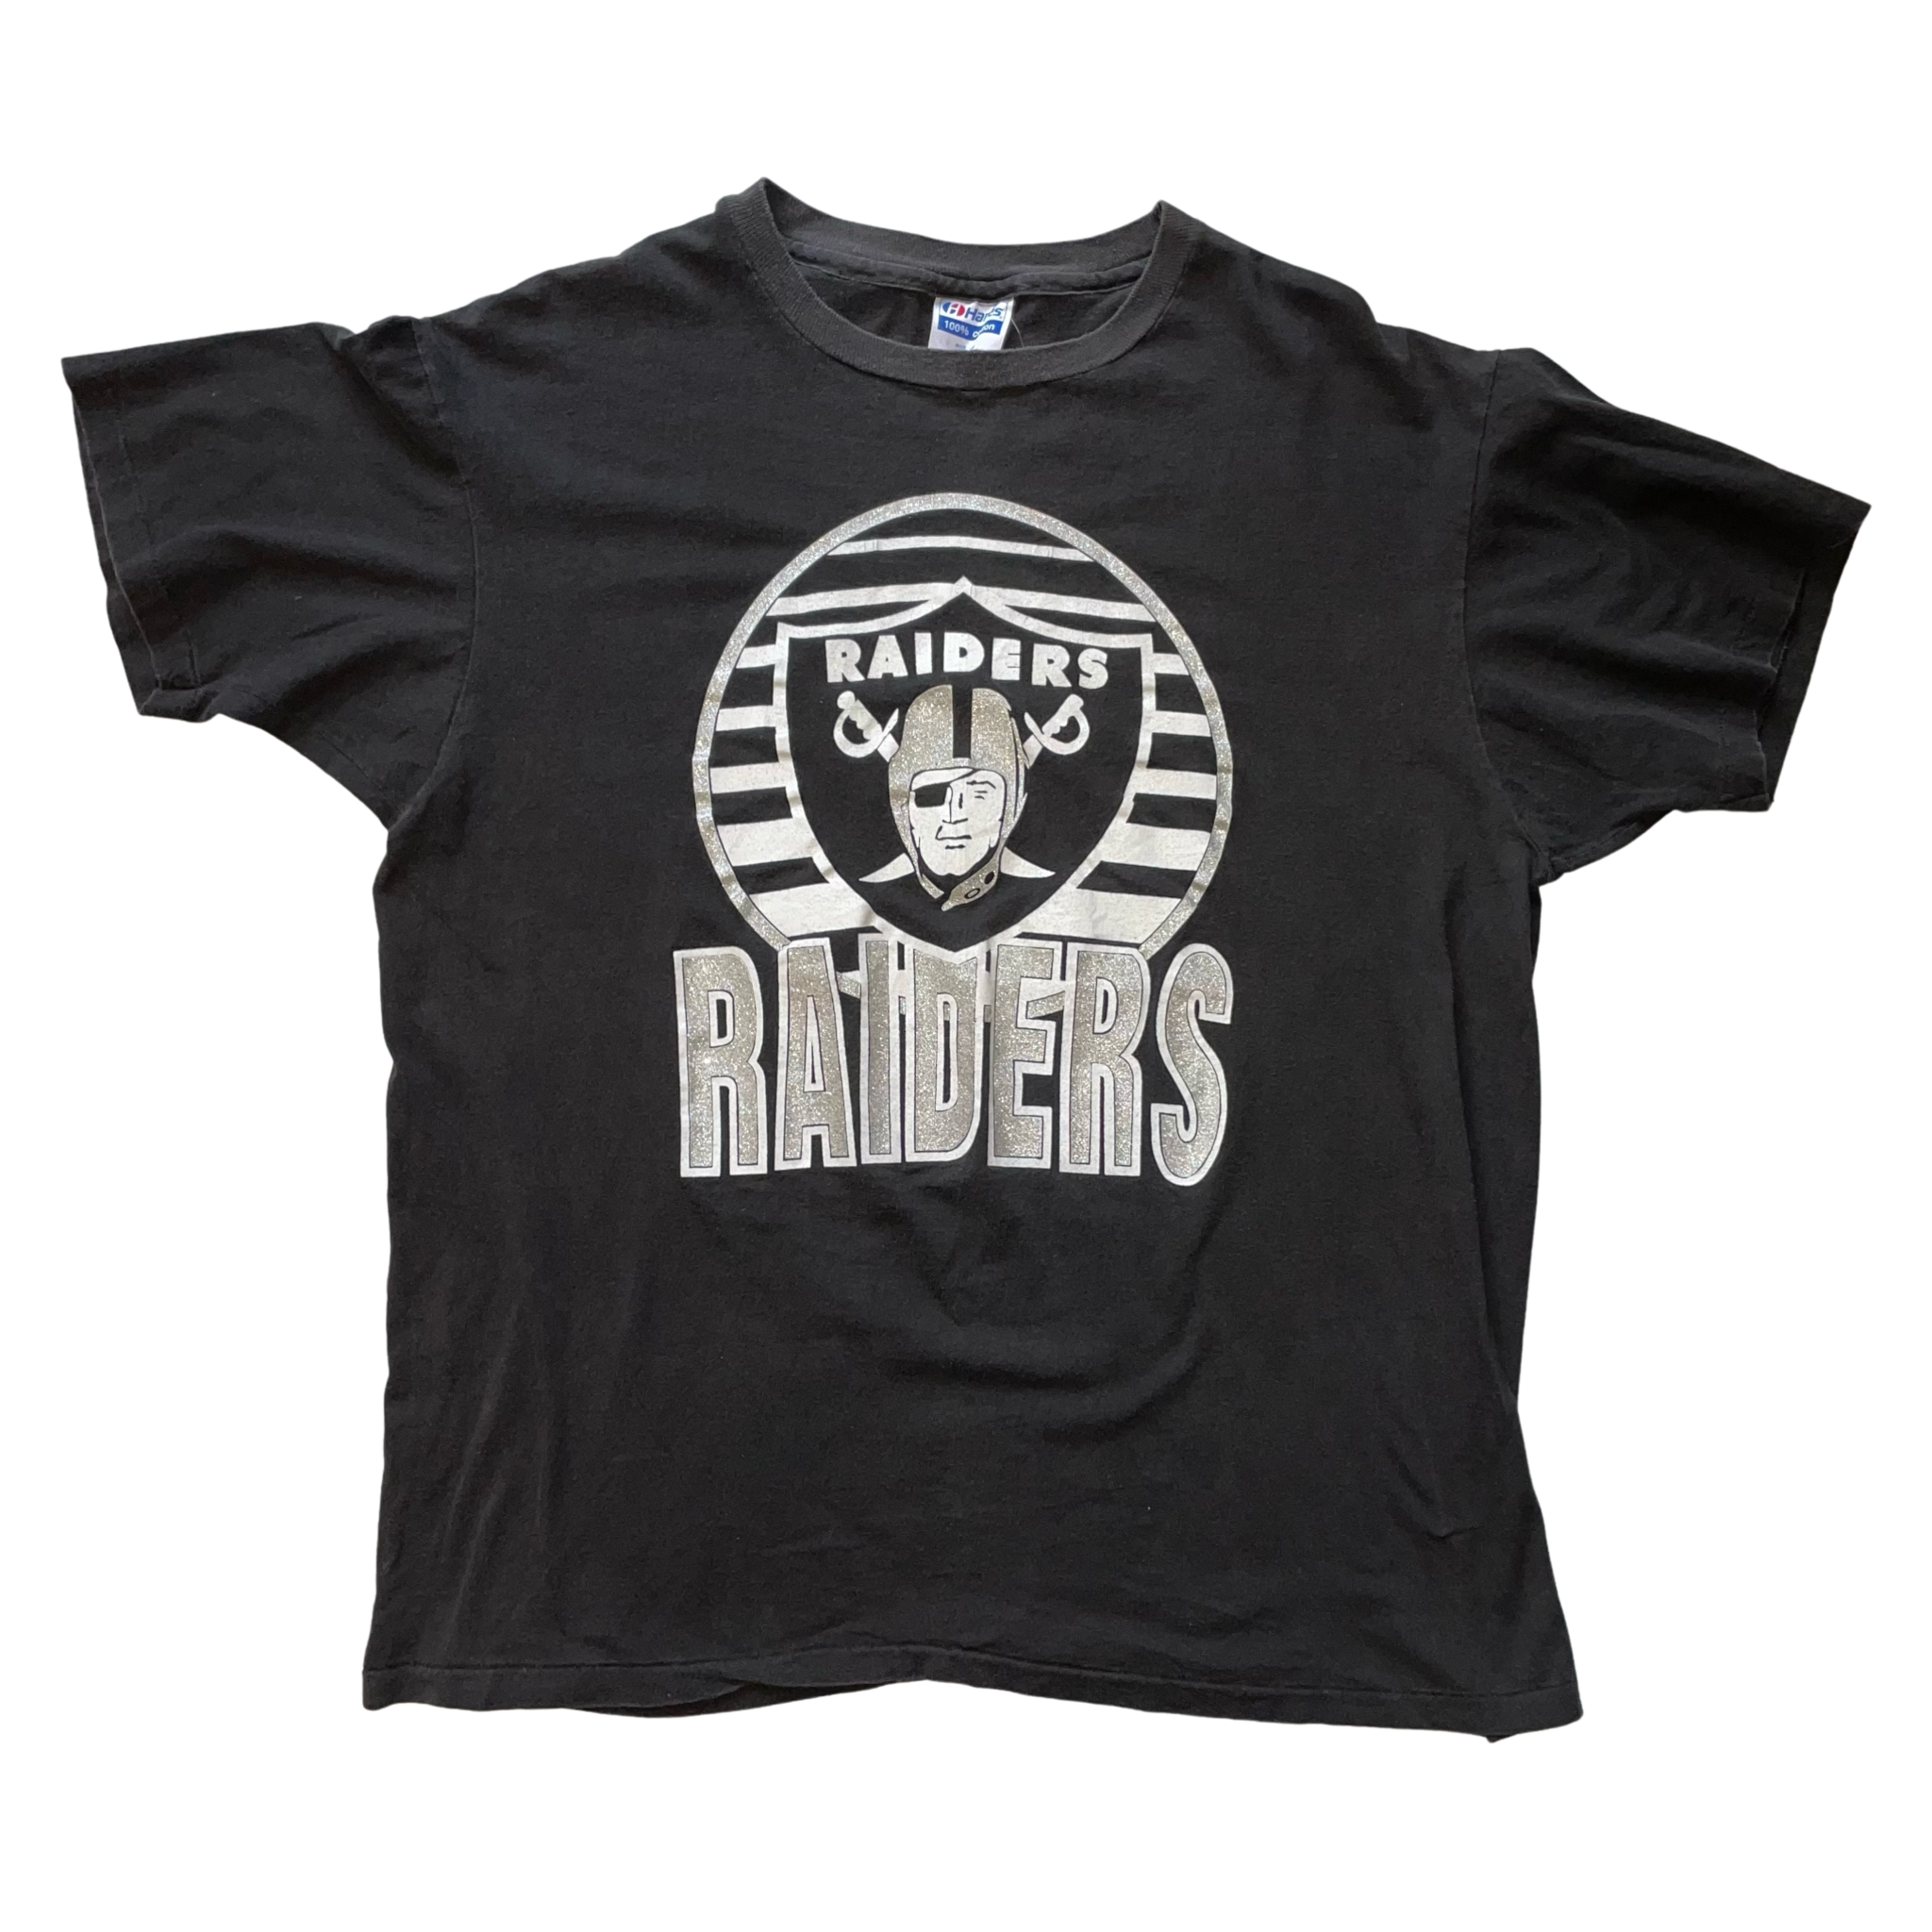 Vintage NFL Raiders Tee Shirt with Hood Size Medium 1990s